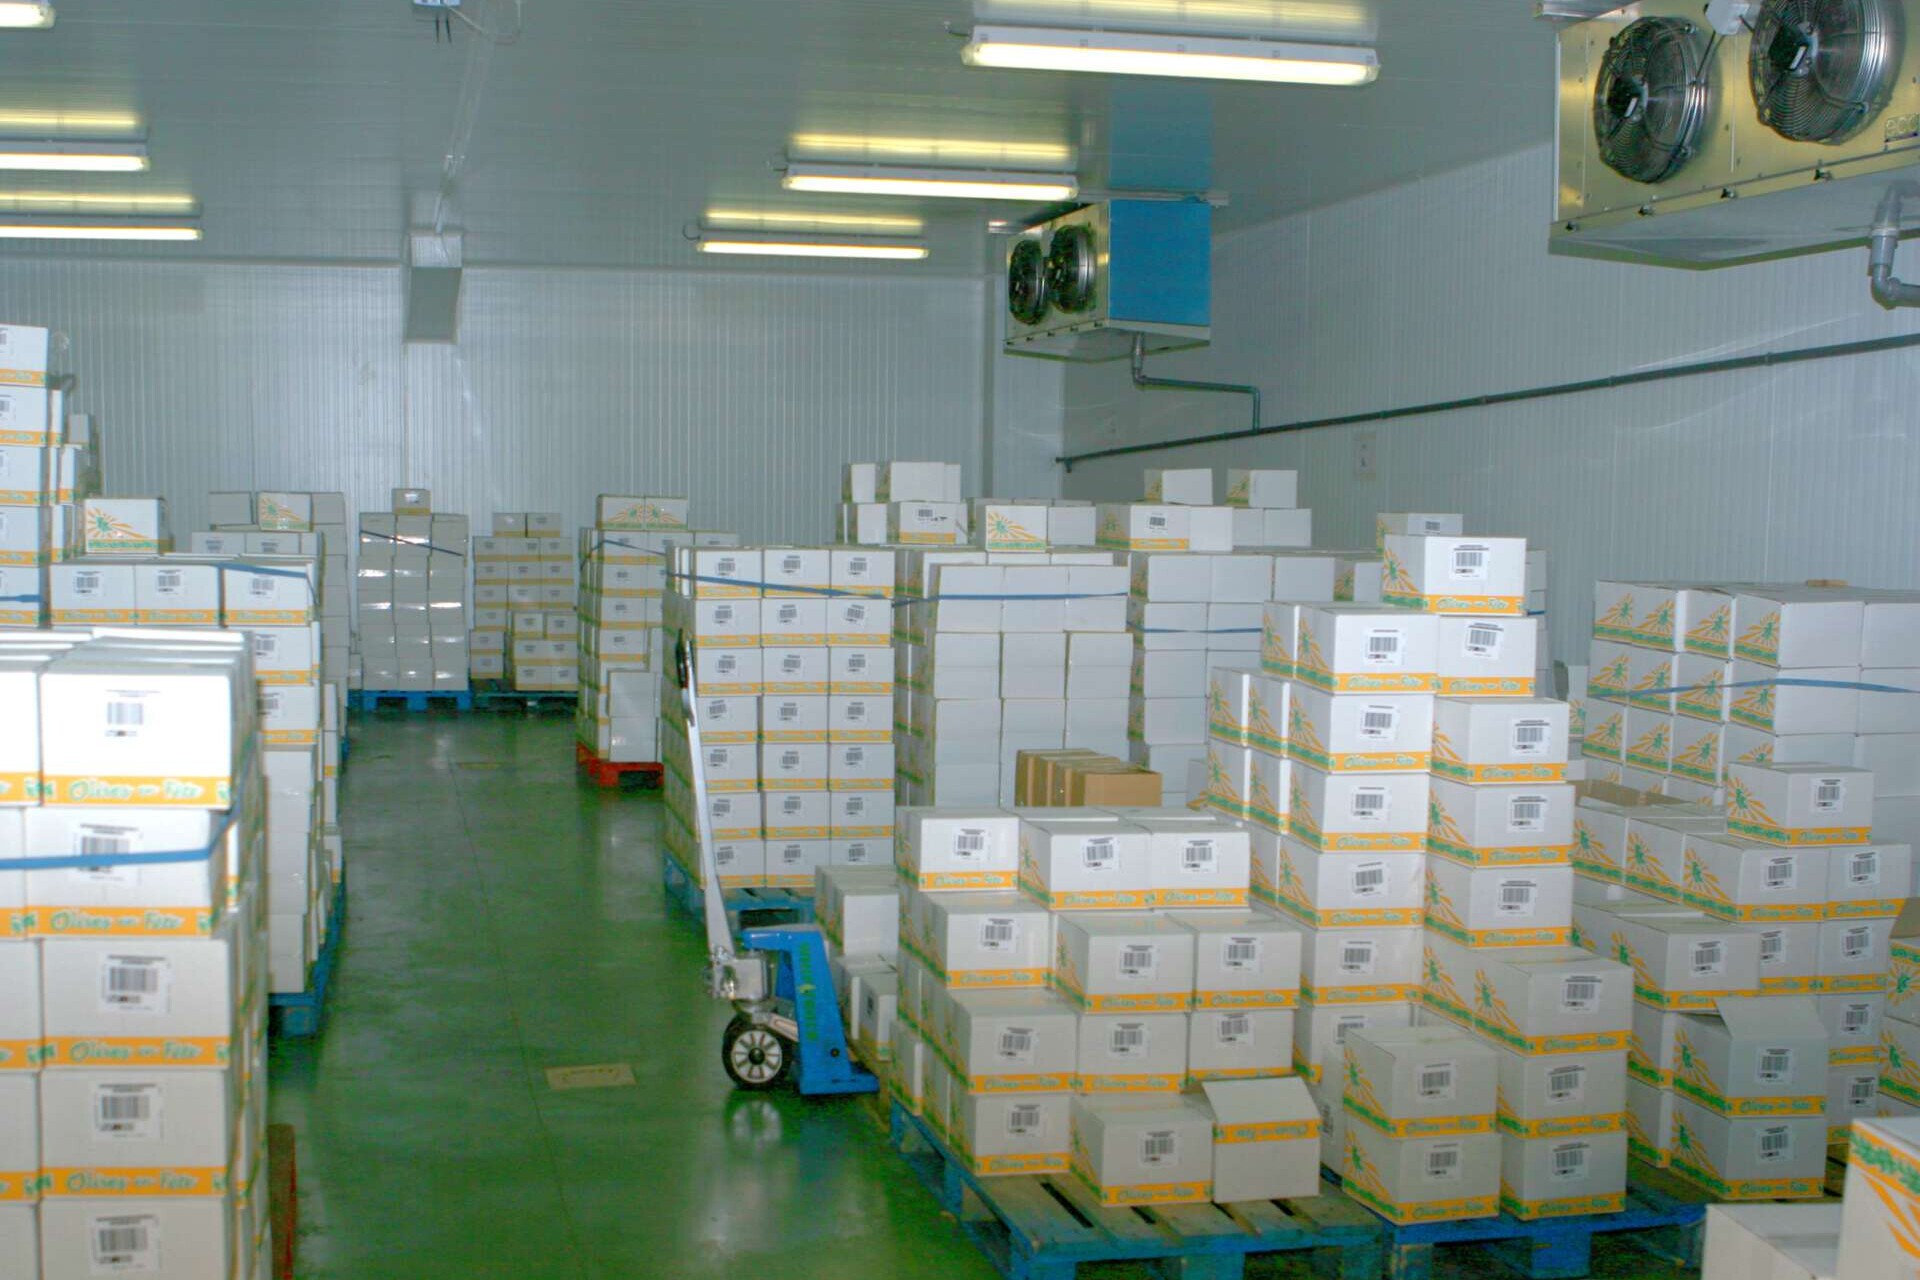 Blick in einen Kühlraum mit gestapelter gekühlter Ware in Kartons